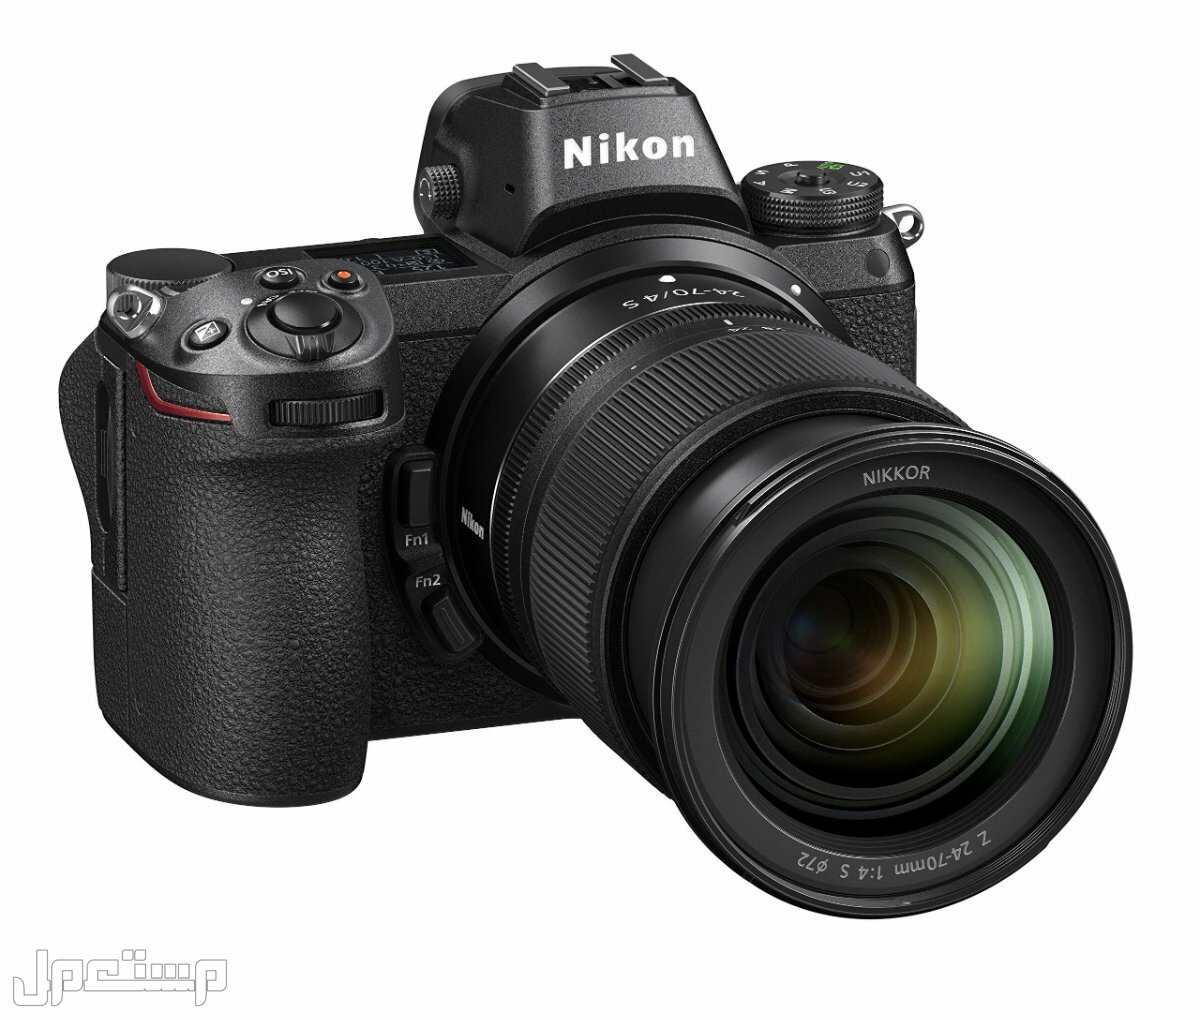 مواصفات ومميزات وأسعار أفضل أنواع كاميرات نيكون للمحترفين في اليَمَن كاميرا Nikon Z6